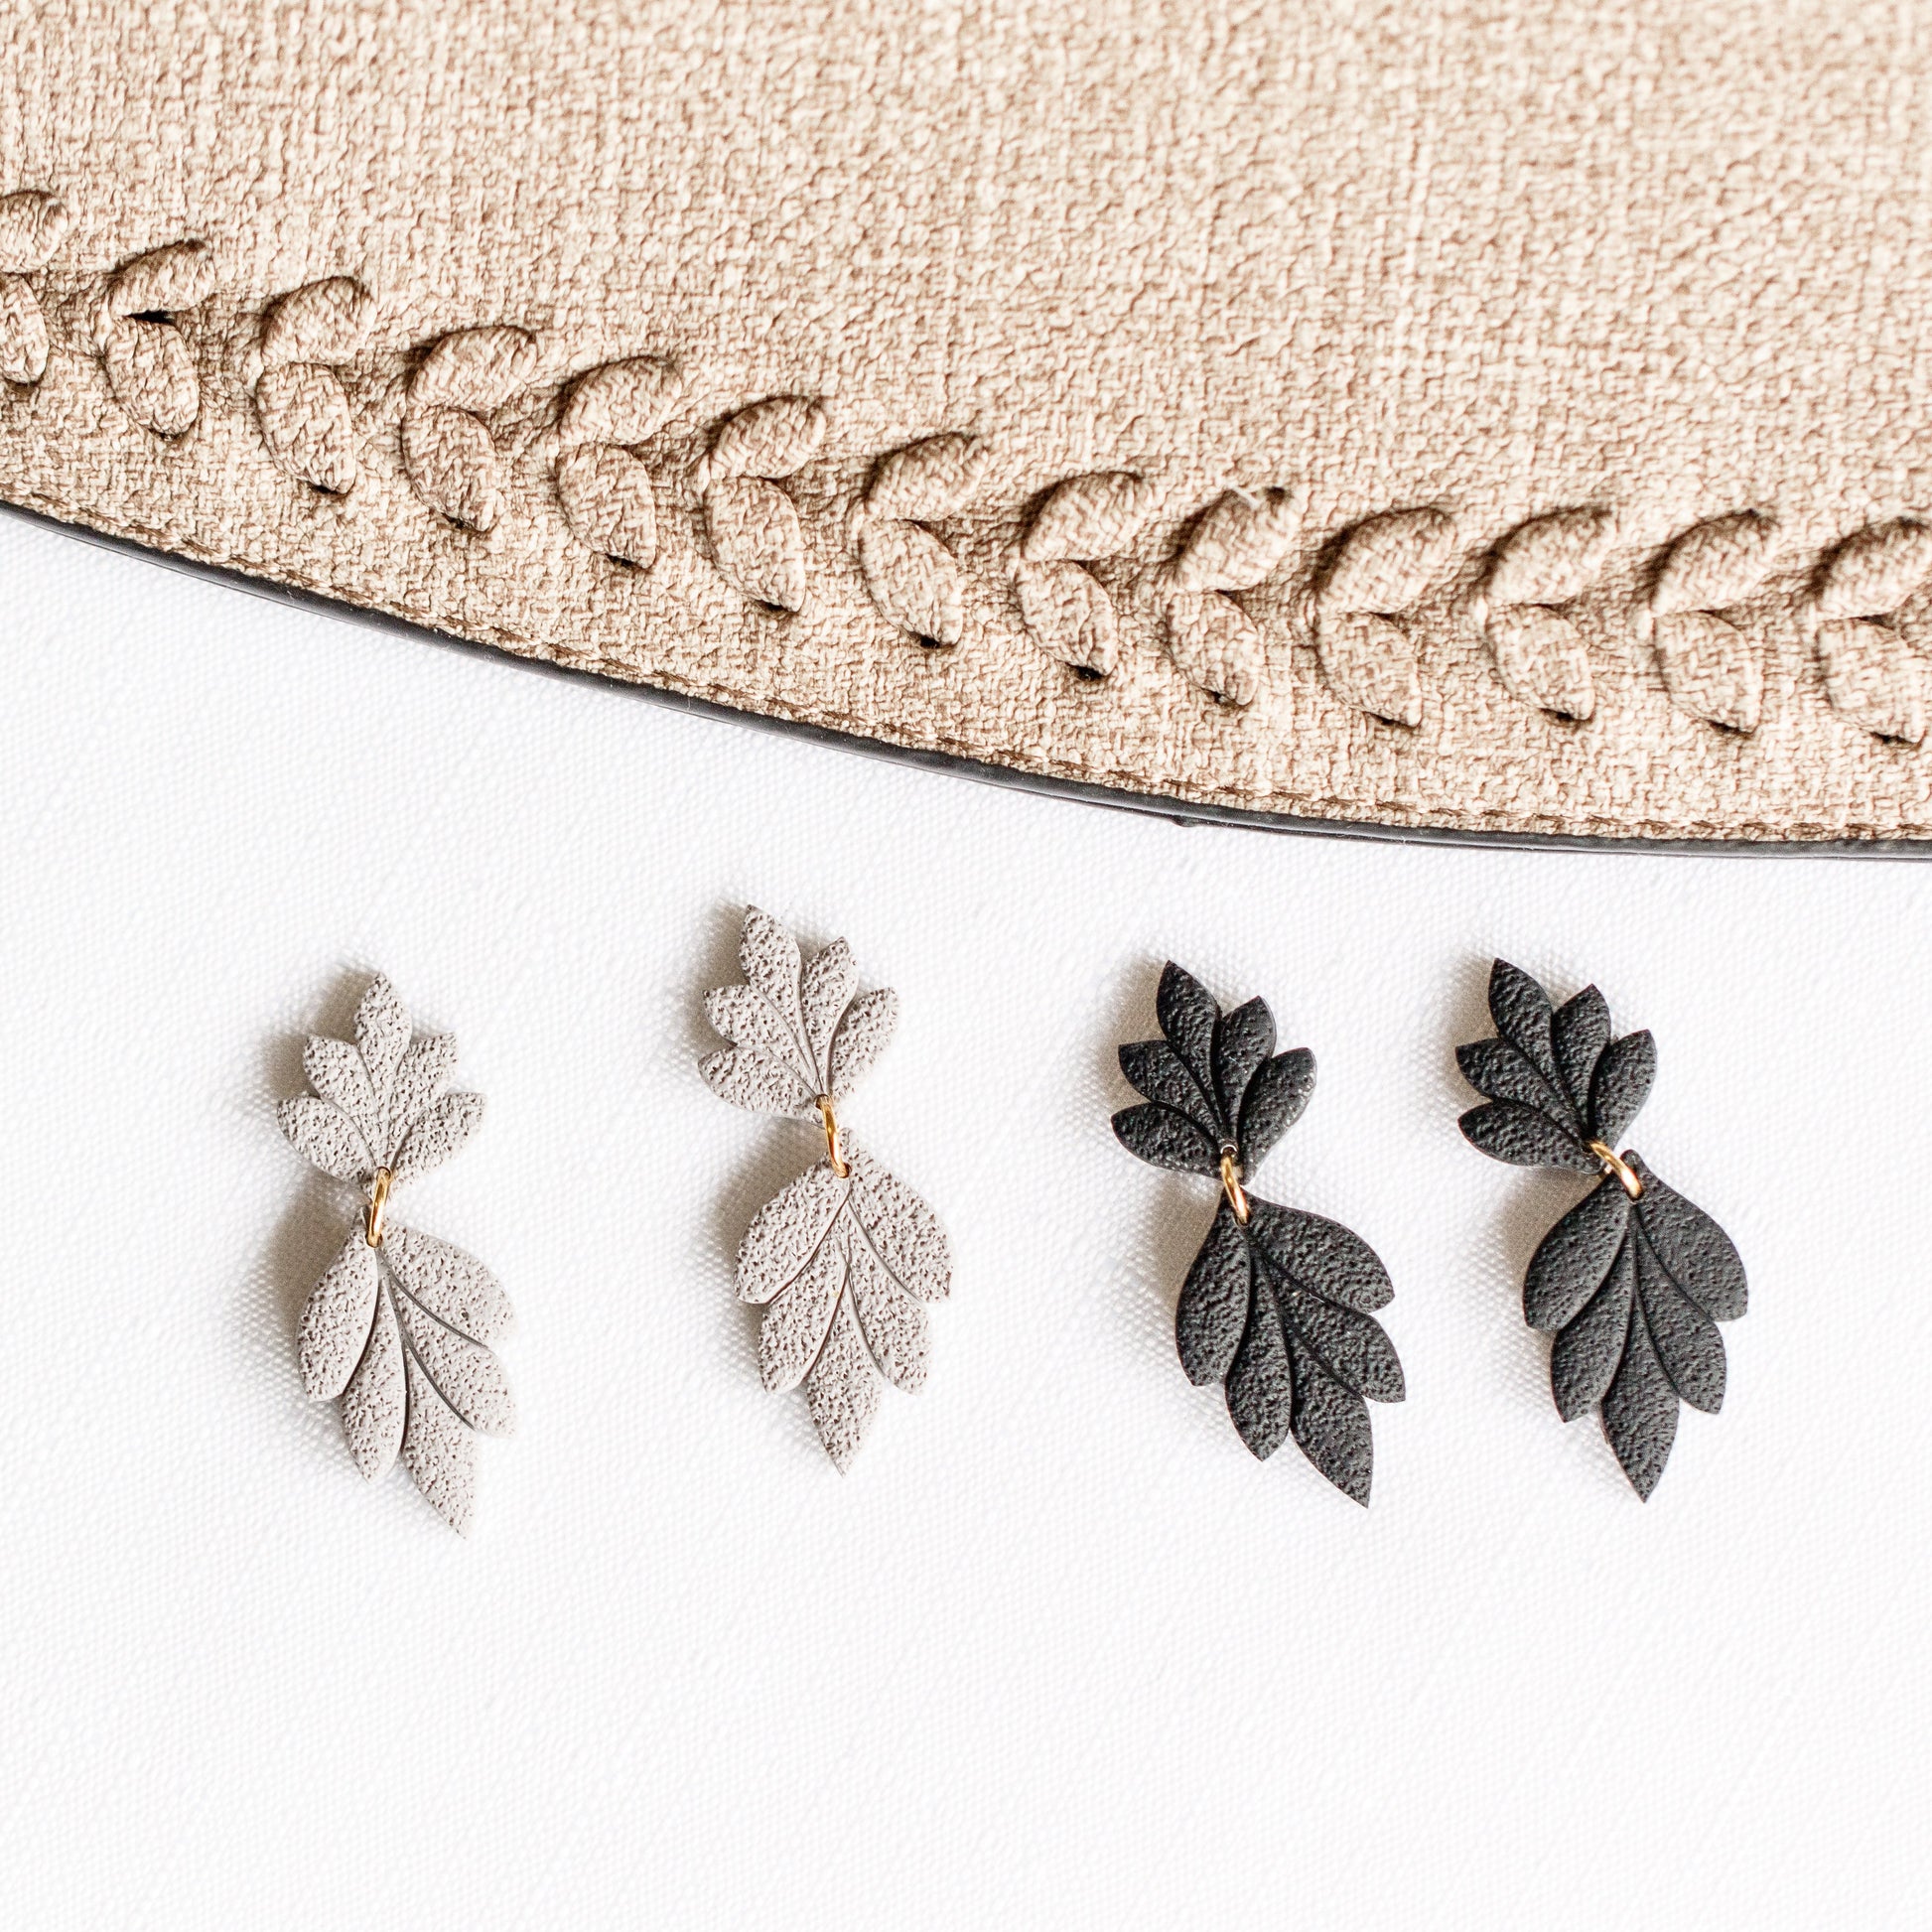 Modern Black Embossed Leaf Earrings - Claymore NZ - Earrings